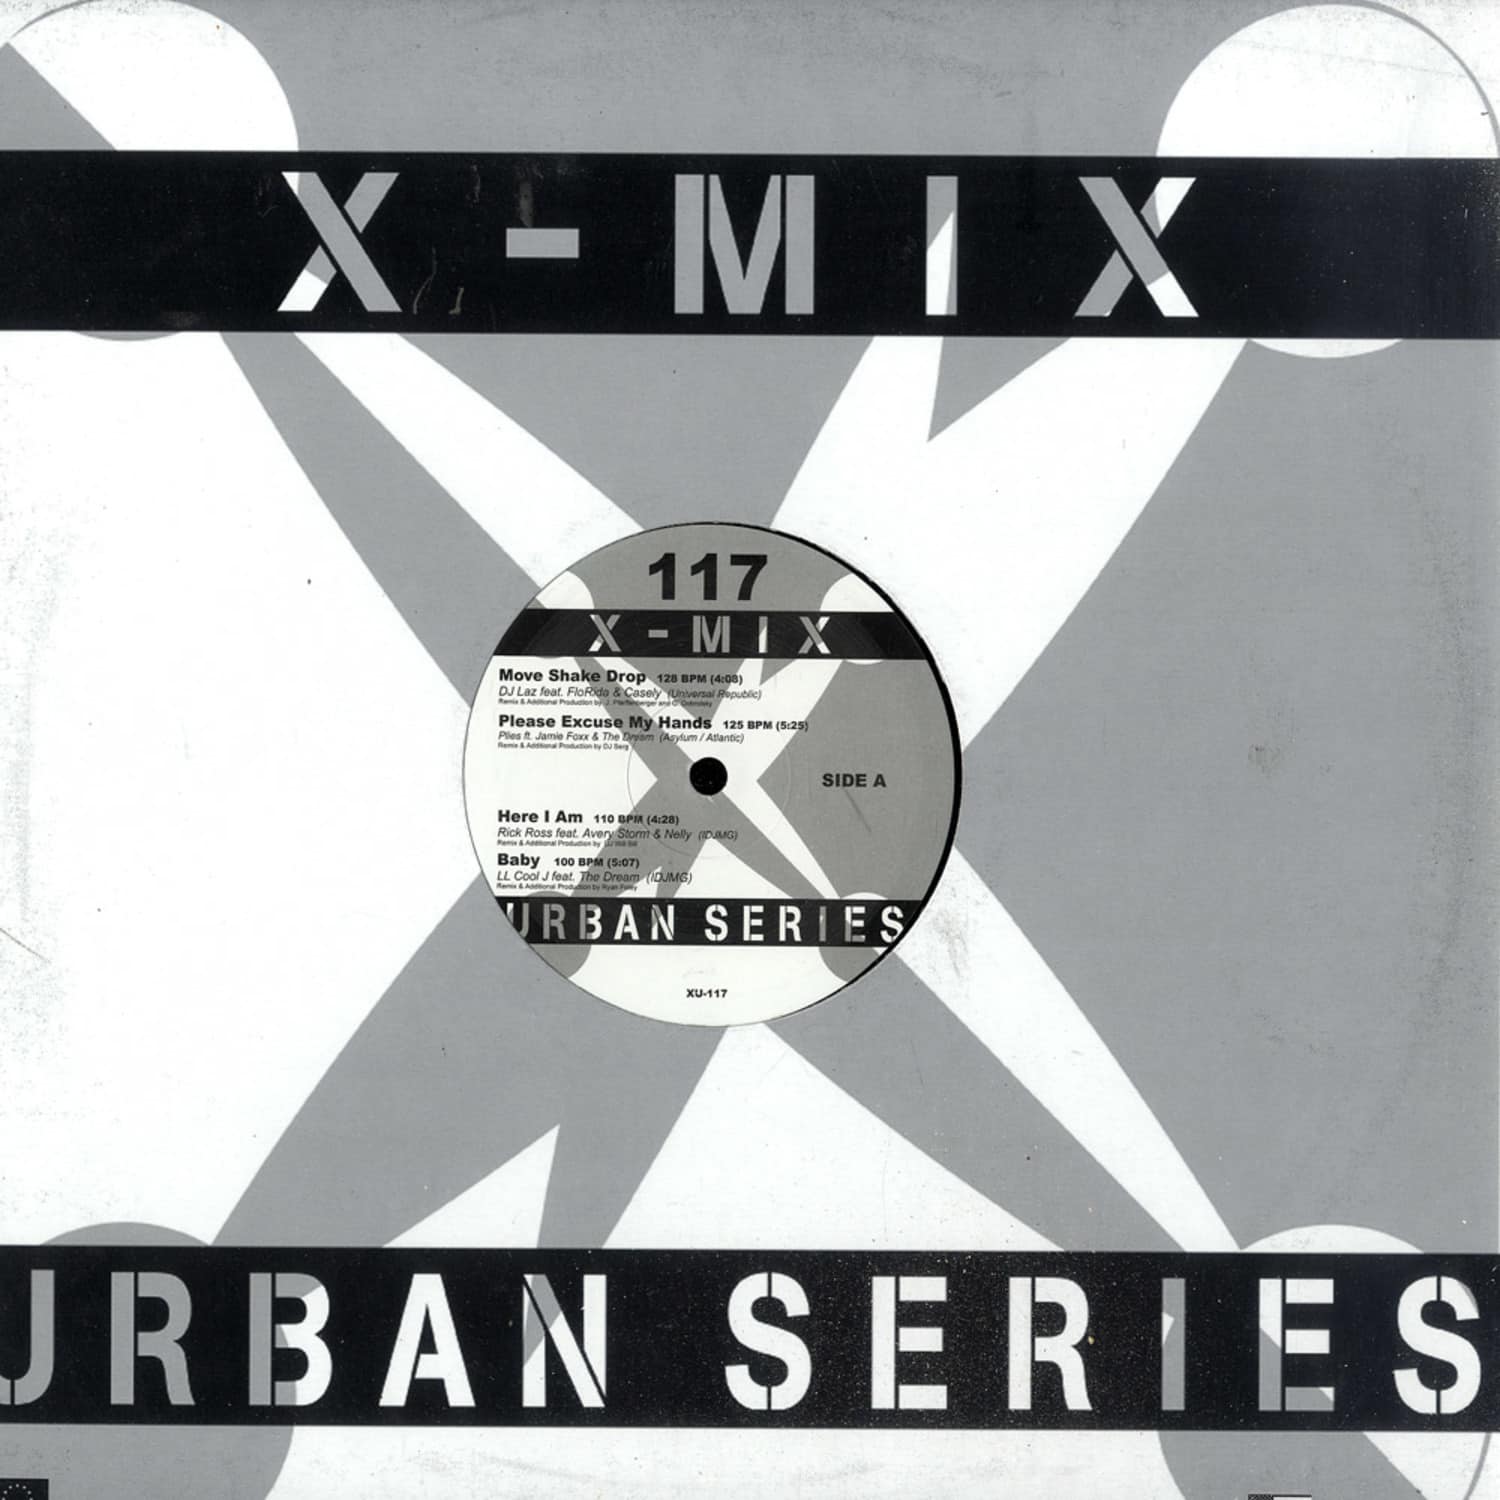 Urban Series - VOL. 117 X-MIX